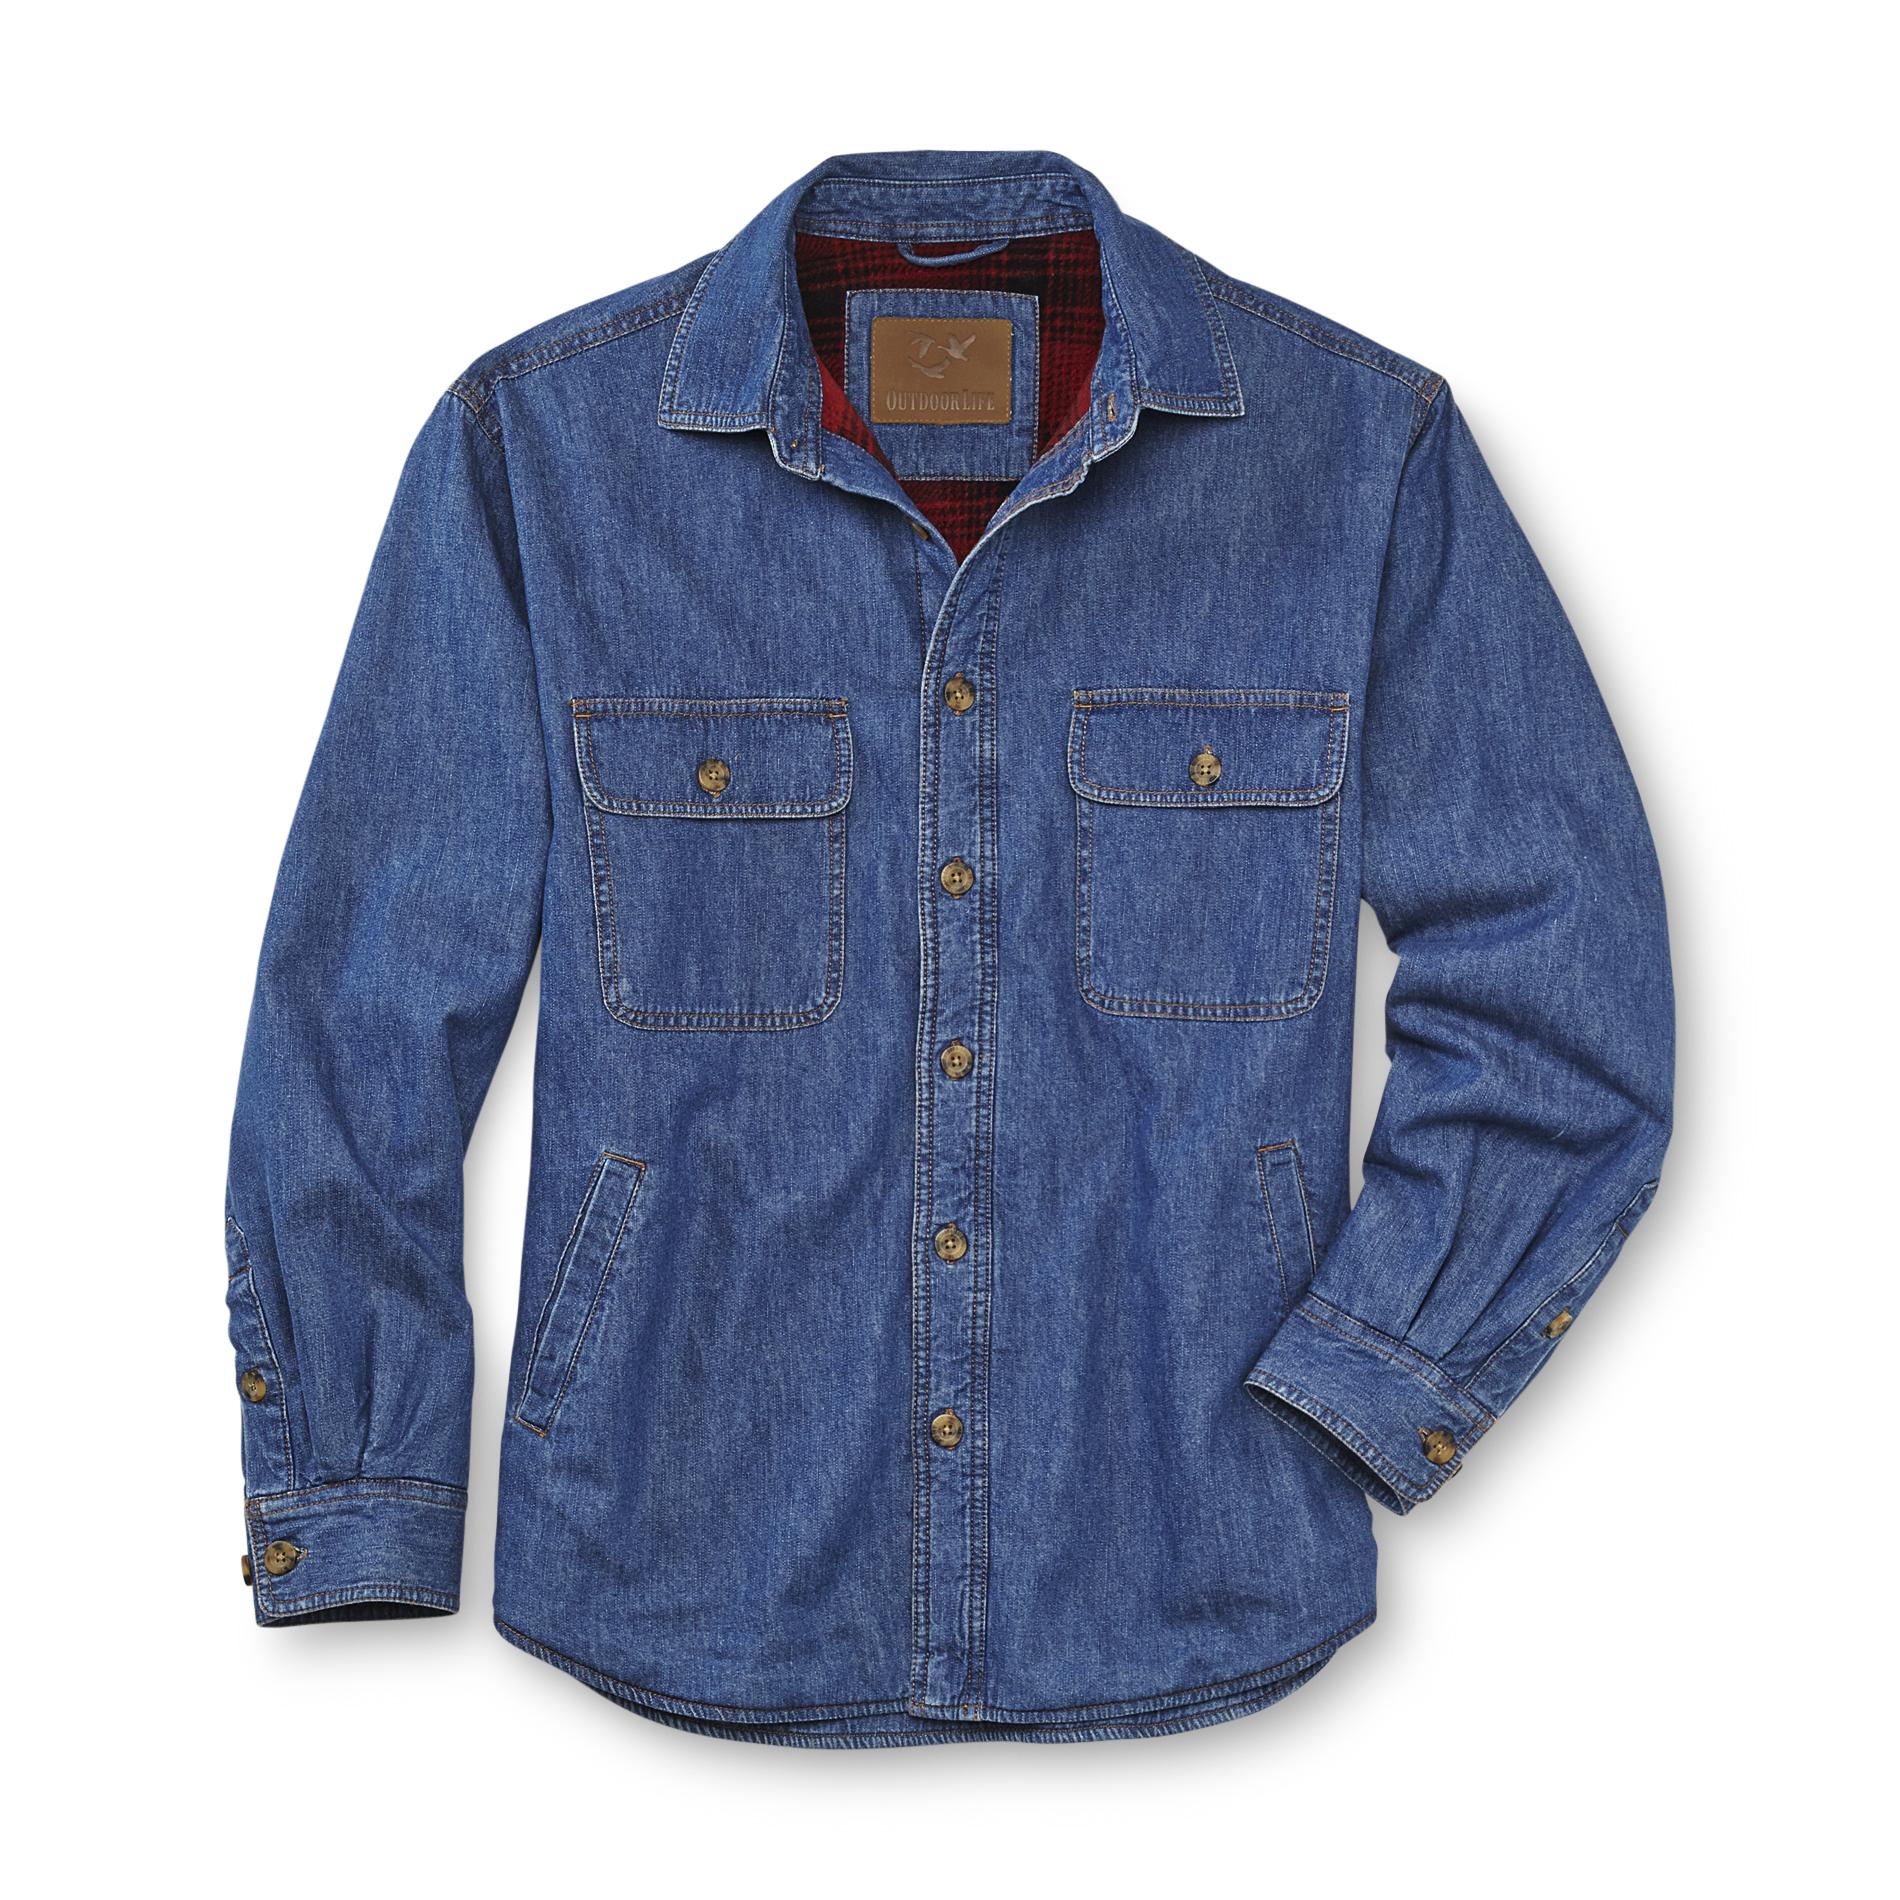 Outdoor Life Men's Fleece-Lined Denim Shirt Jacket